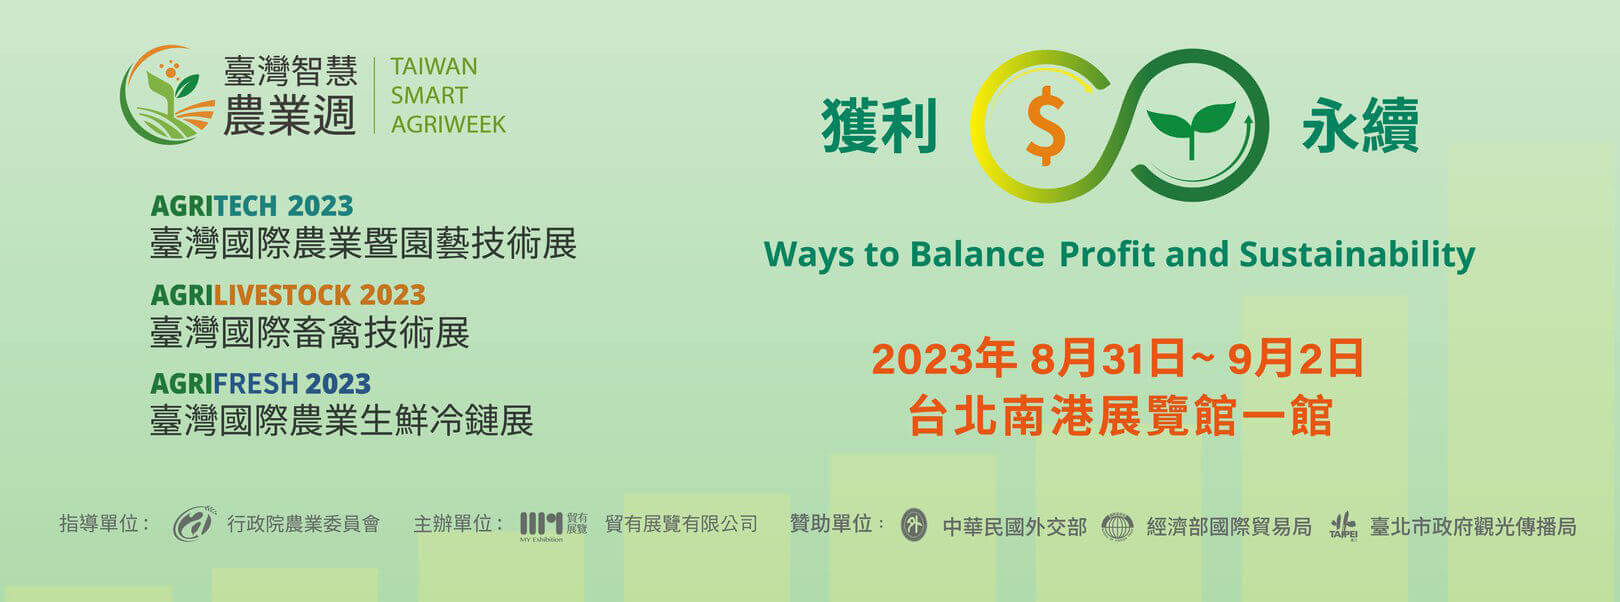 2023年台灣智慧農業展